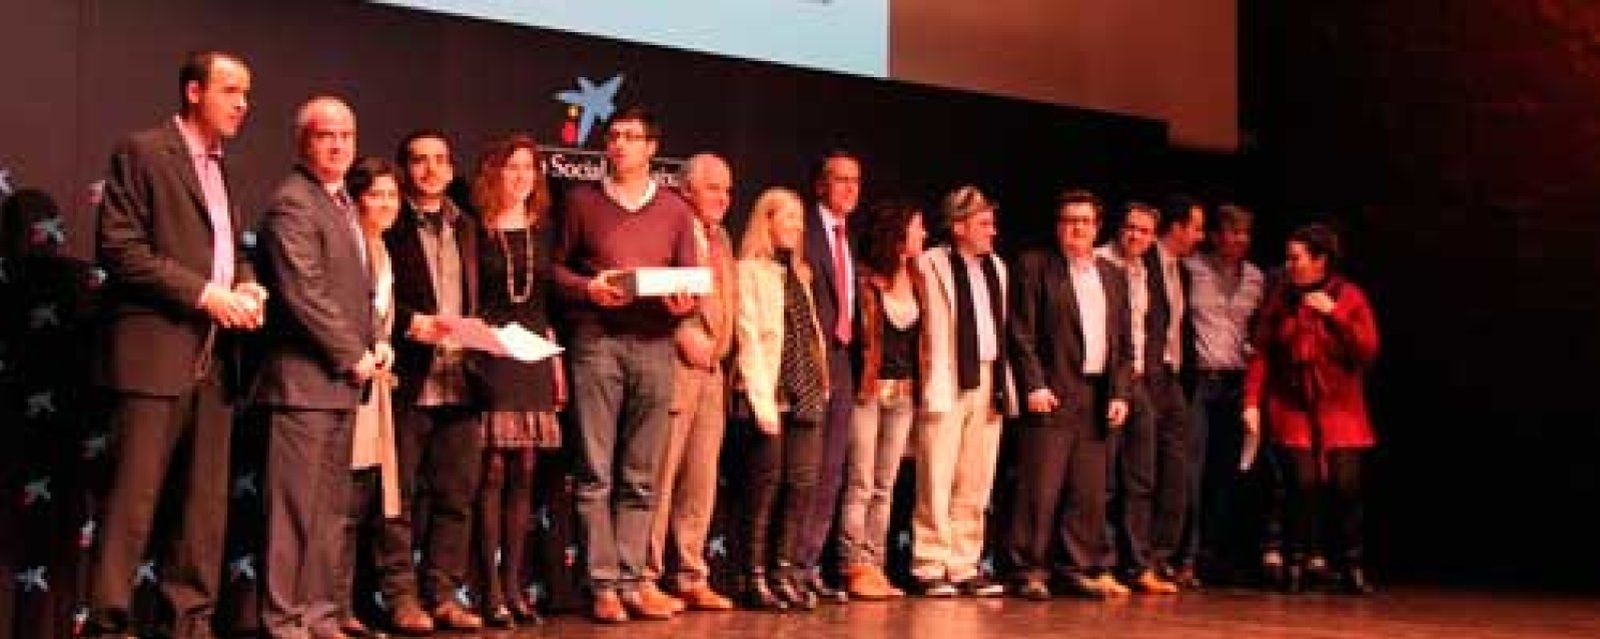 Foto: Hitsbook, Iristrace, Kantox, Lacambra y Medtep, ganadores de linktoStart 2011